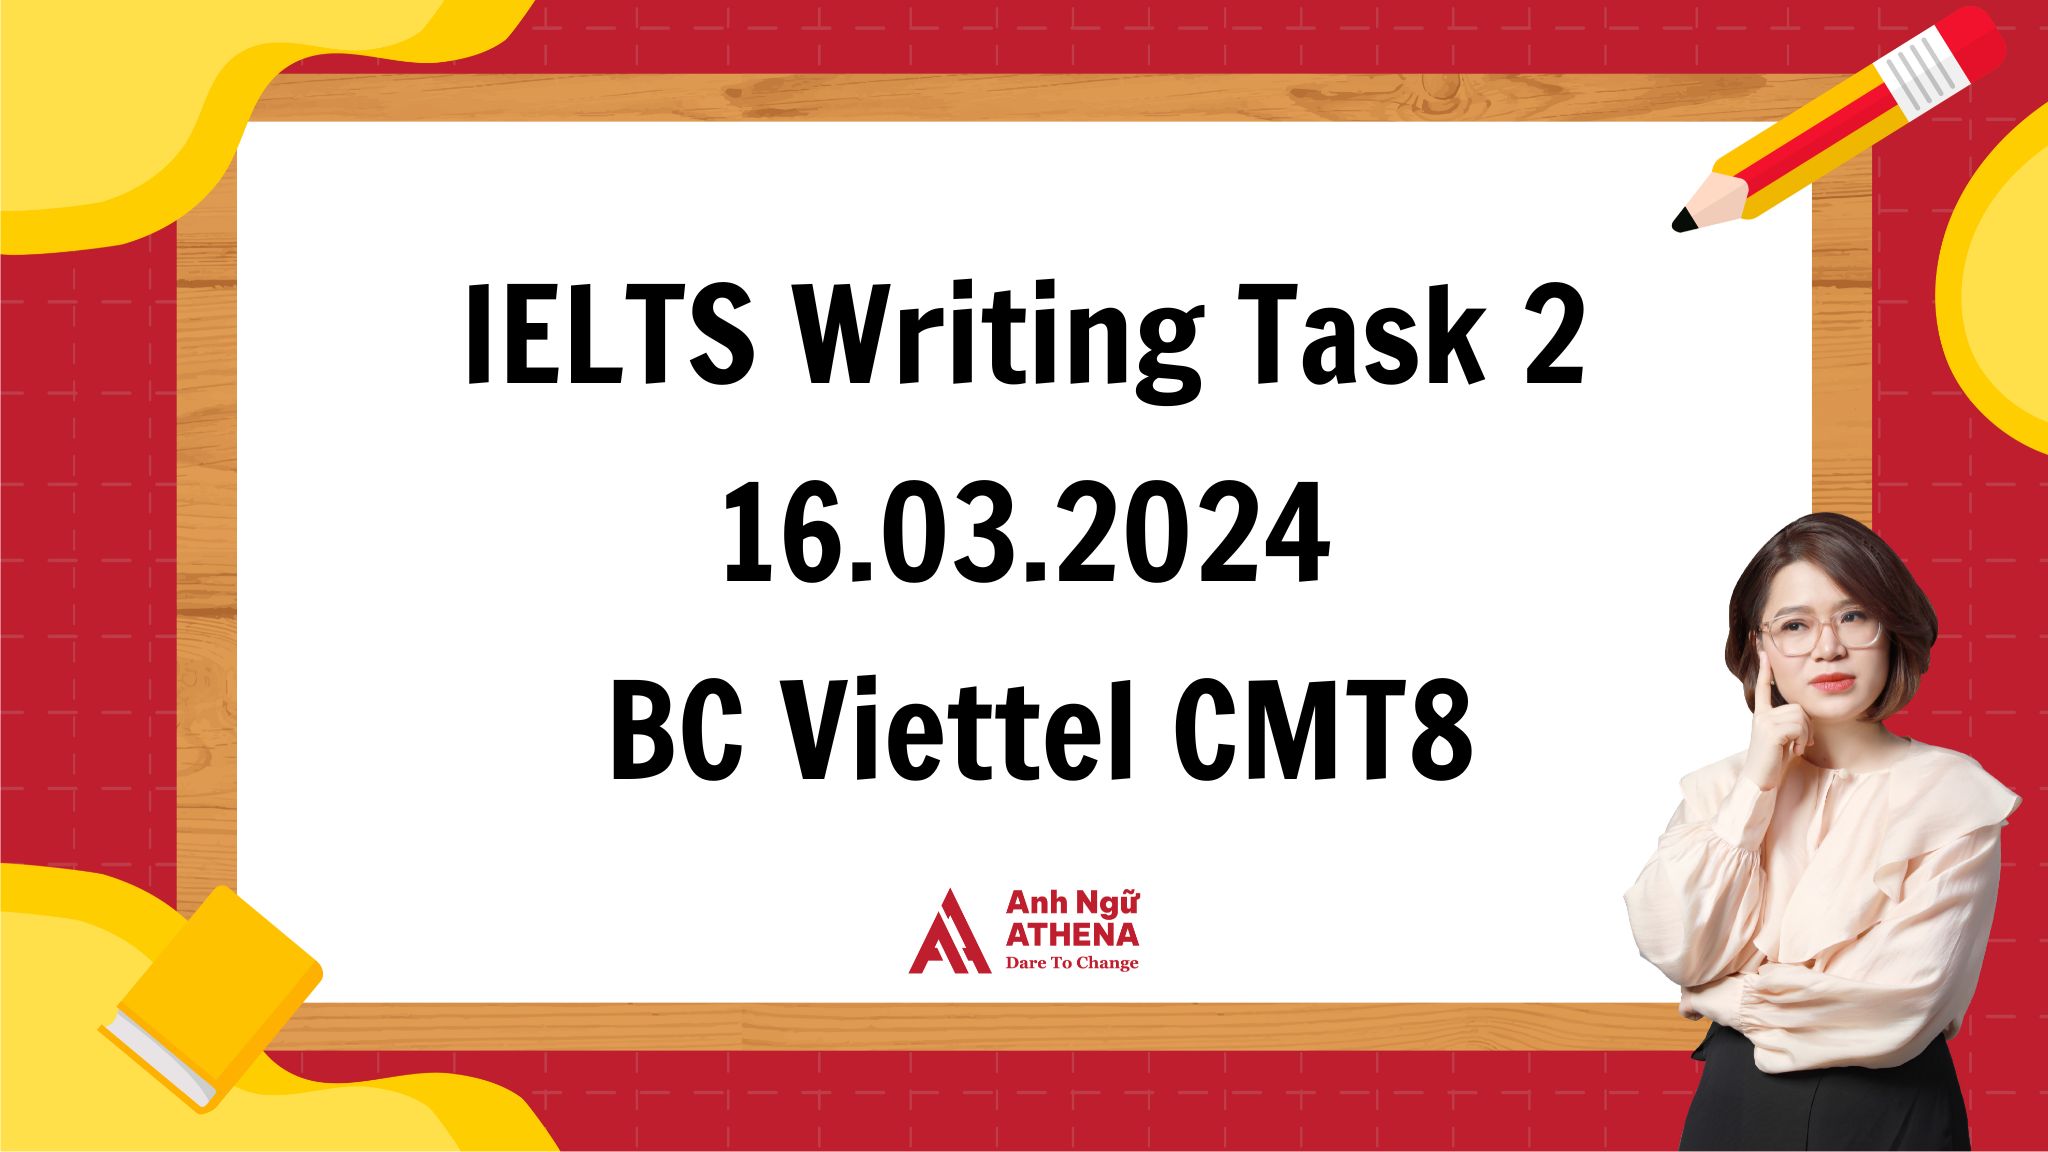 Giải đề chi tiết IELTS Writing Task 2 - 16.03.2024 tại BC Viettel CMT8